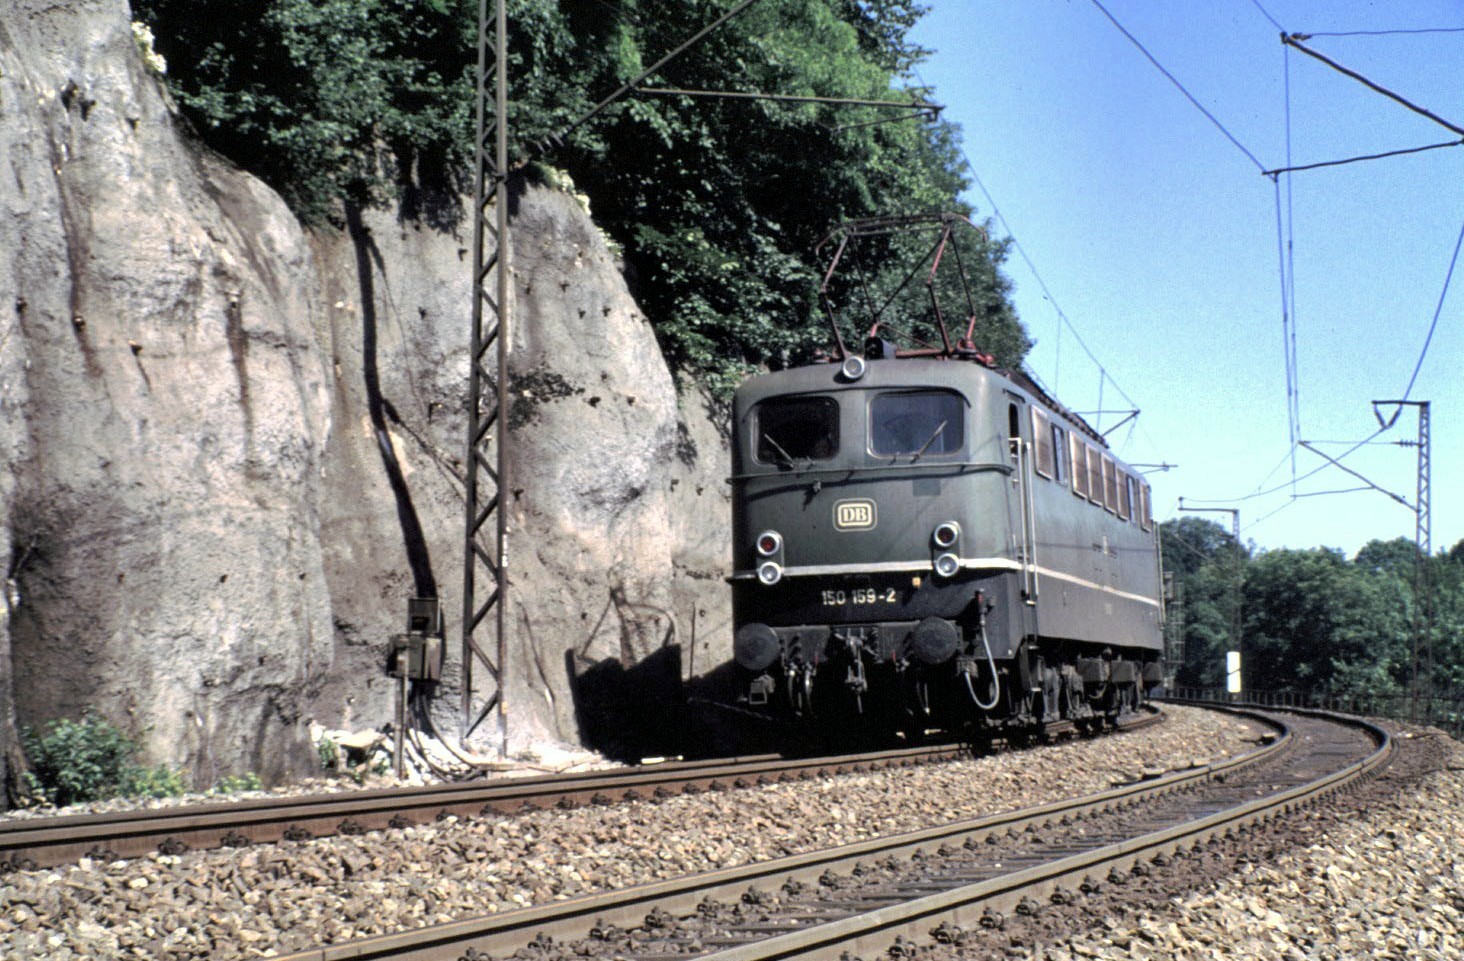 150 159-2 Schublok kehrt nach getanem Dienst nach Geislingen zurück im August 1990.